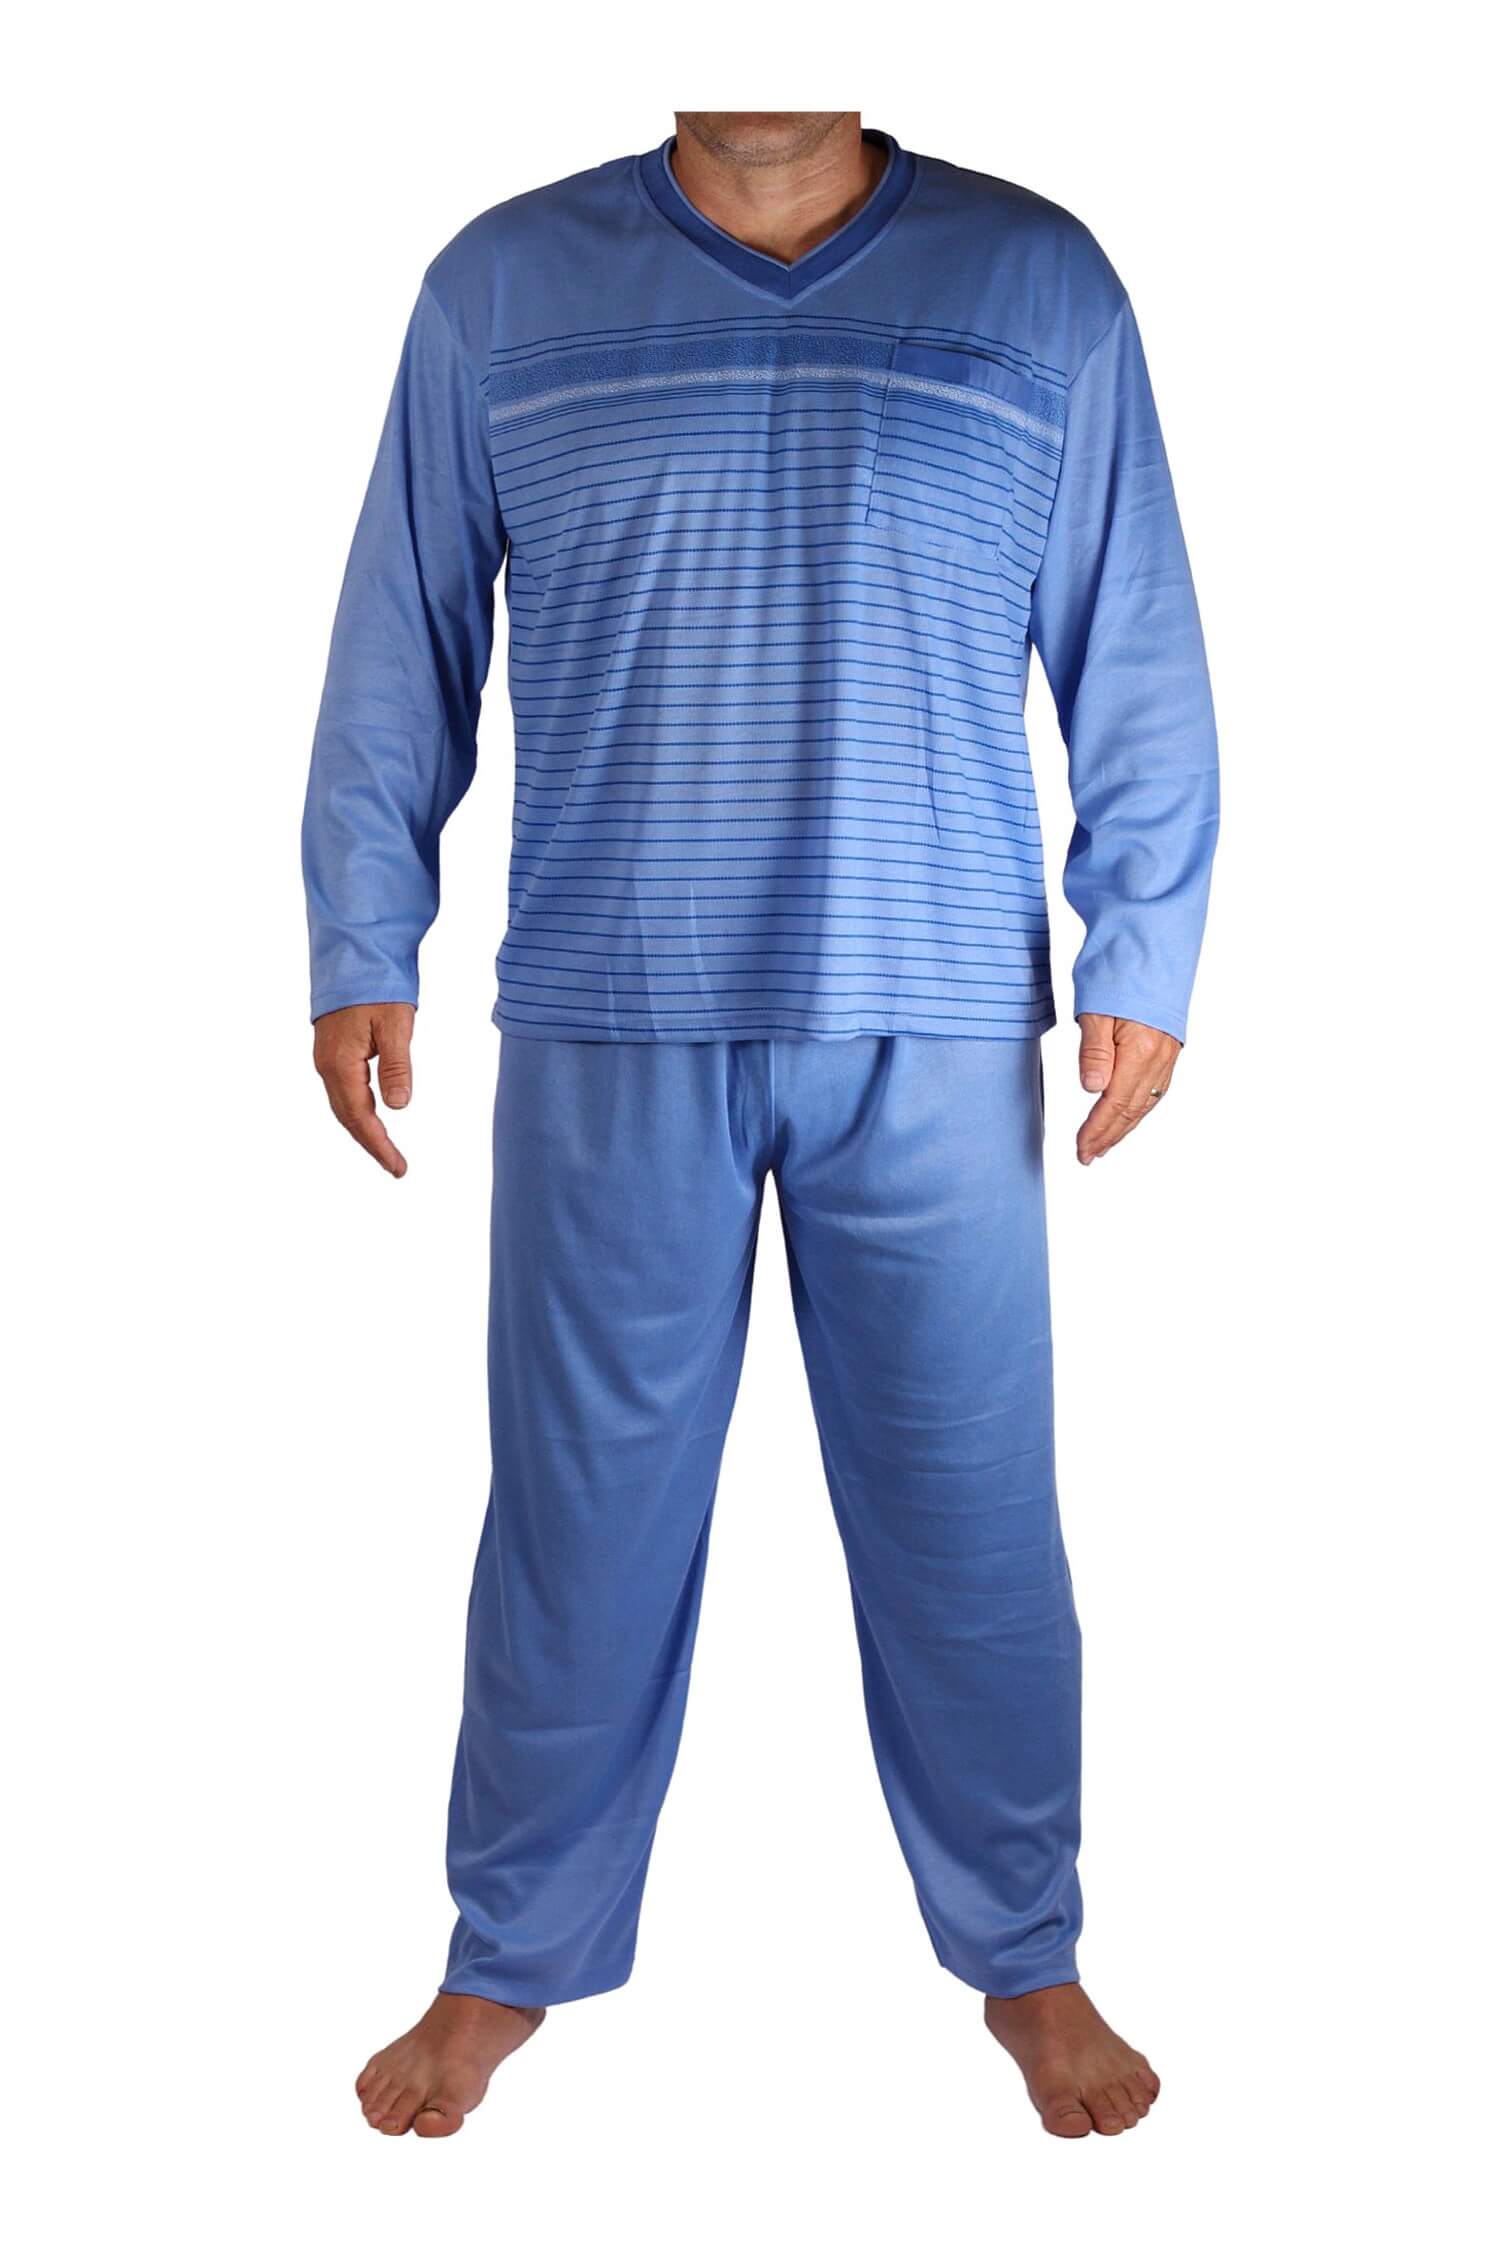 Standa pyžamo pánské dlouhé V2401 světle modrá 3XL